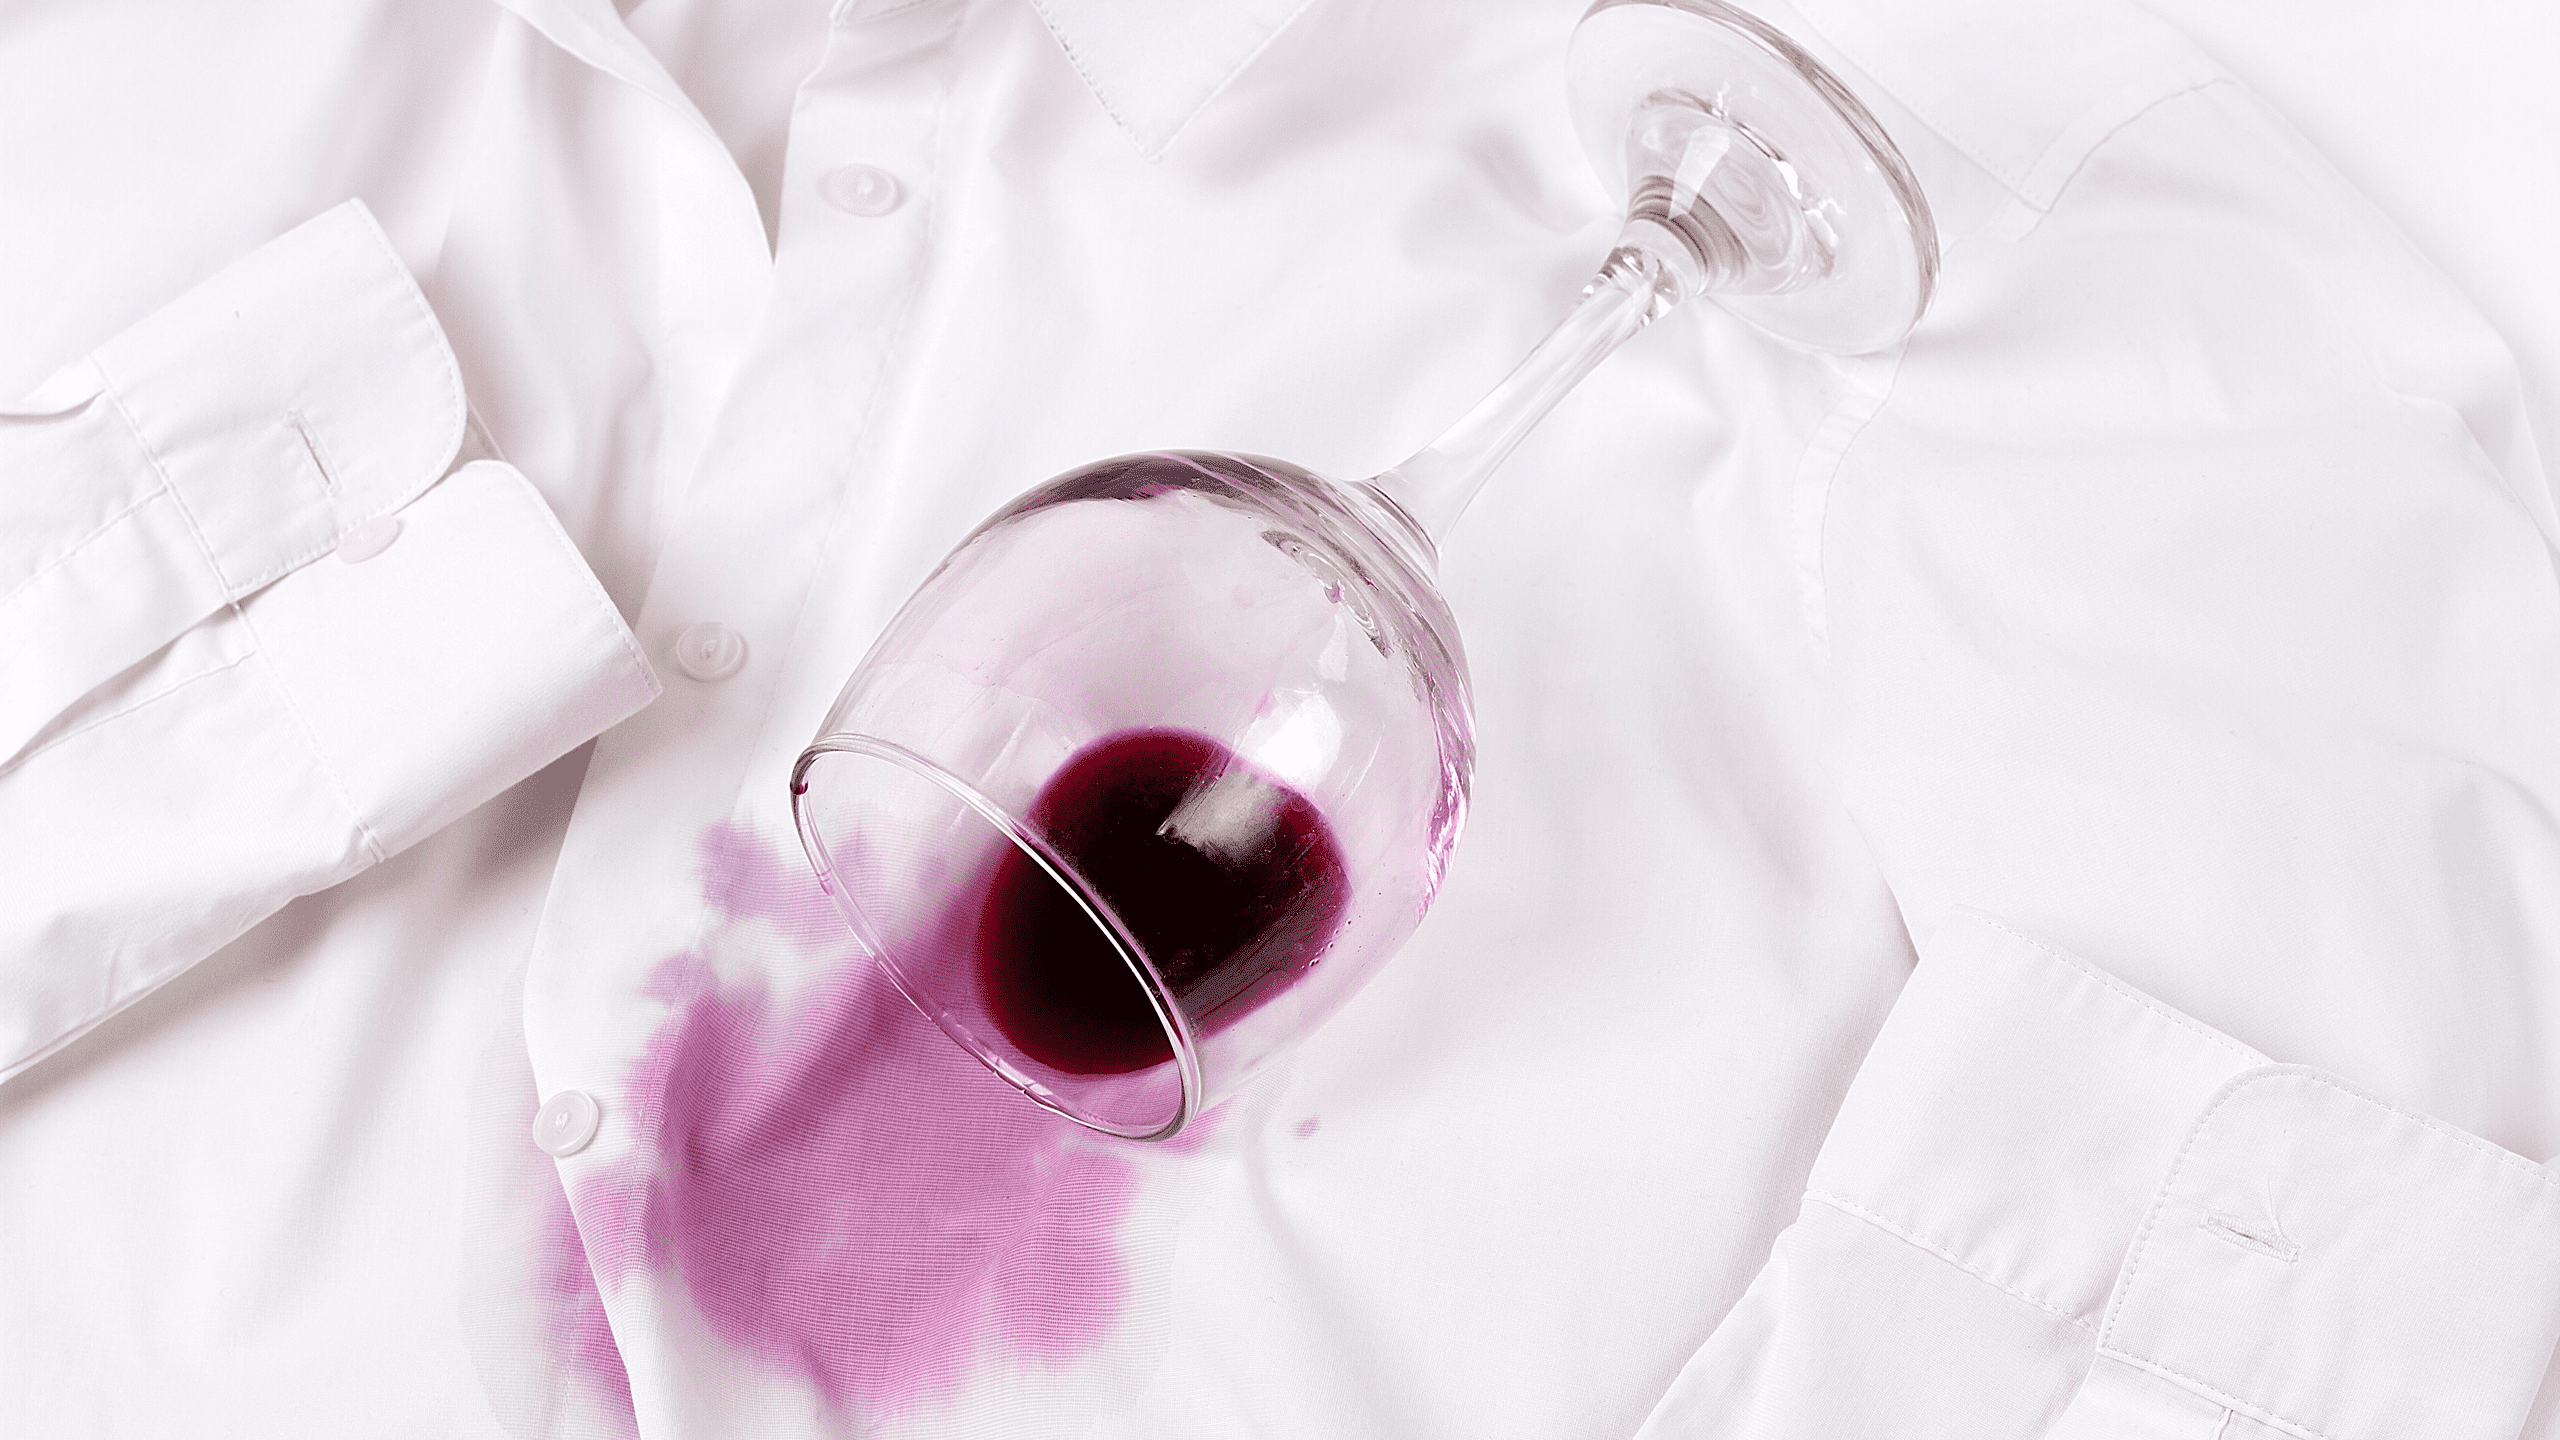 Quitar manchas de vino tinto secas en ropa blanca